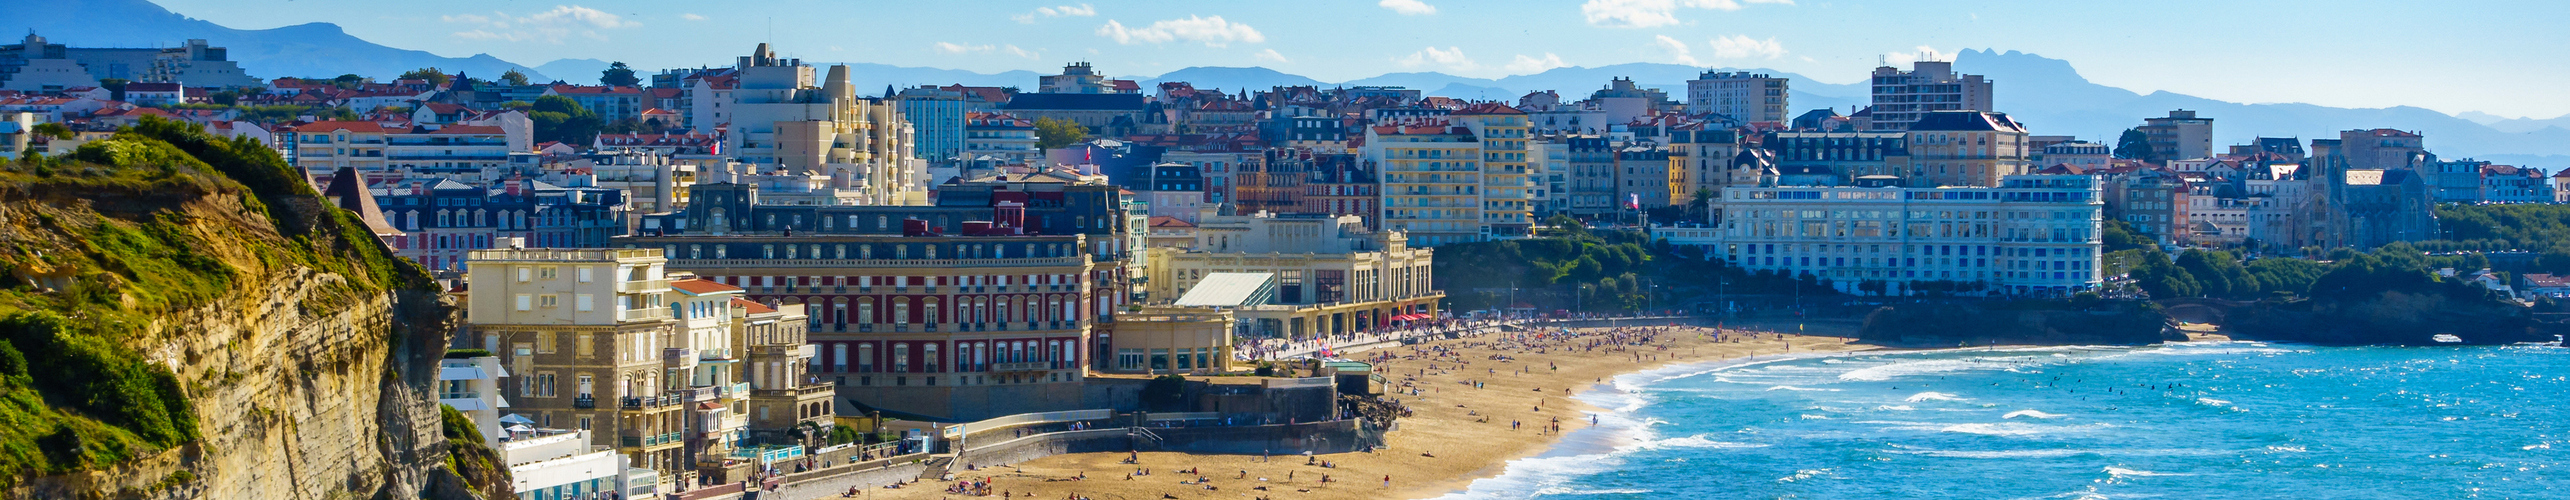 Vue sur la ville de Biarritz face à la mer